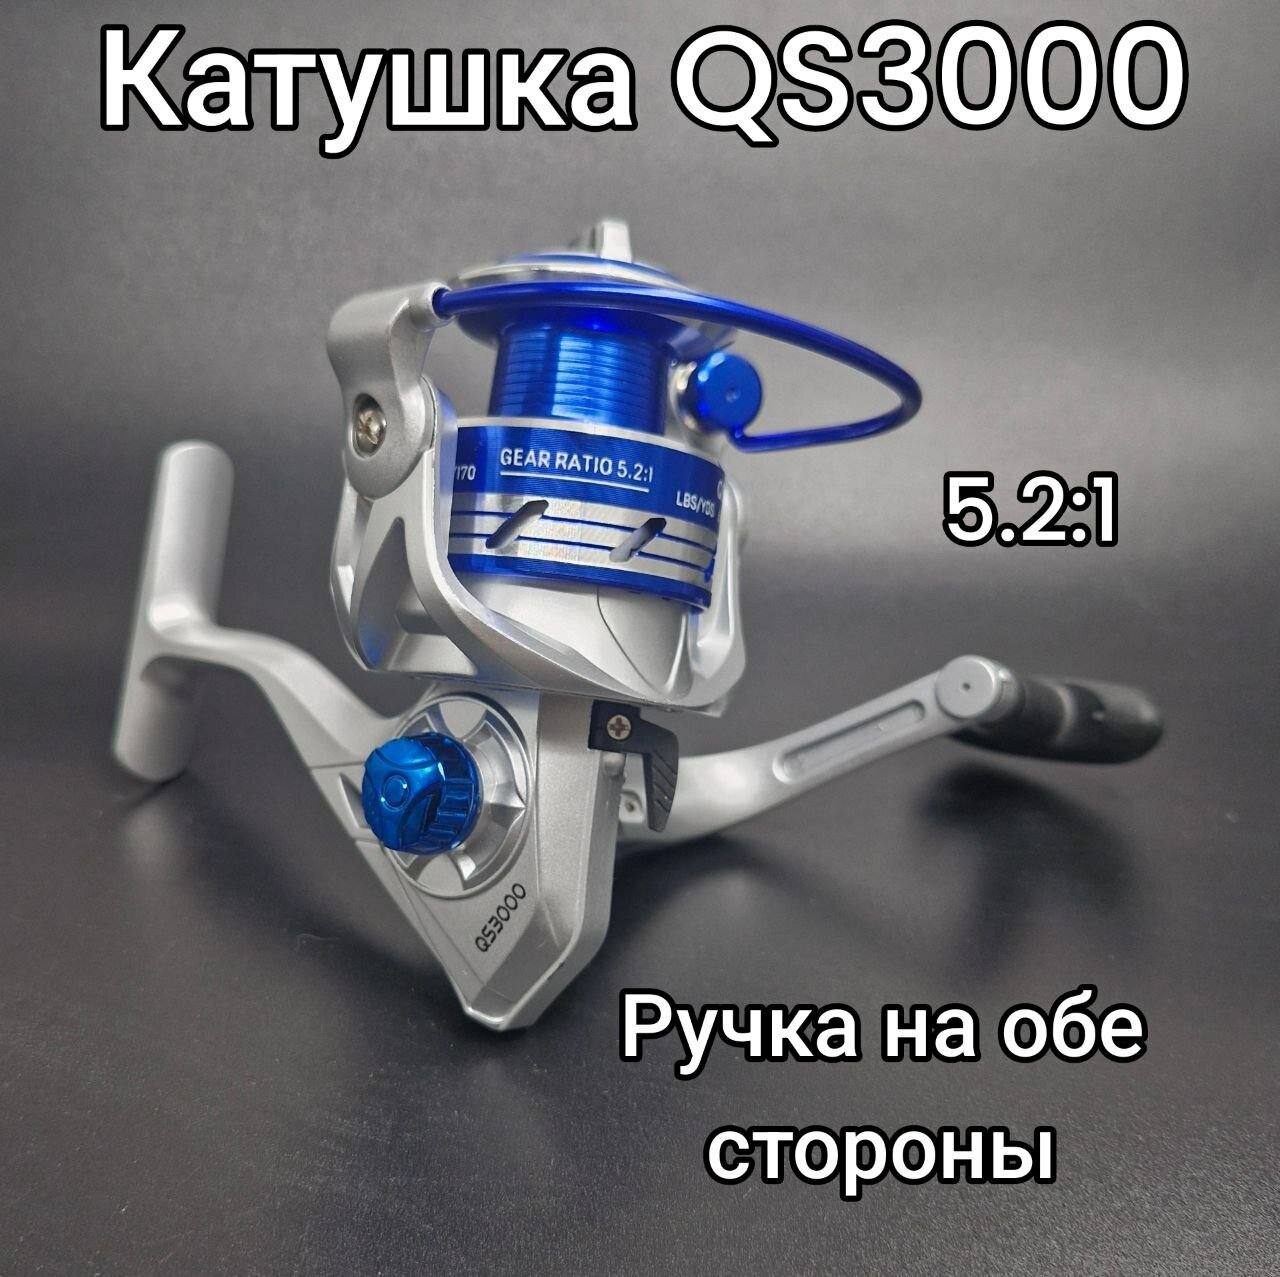 Катушка для спиннинга, для рыбалки QS 3000